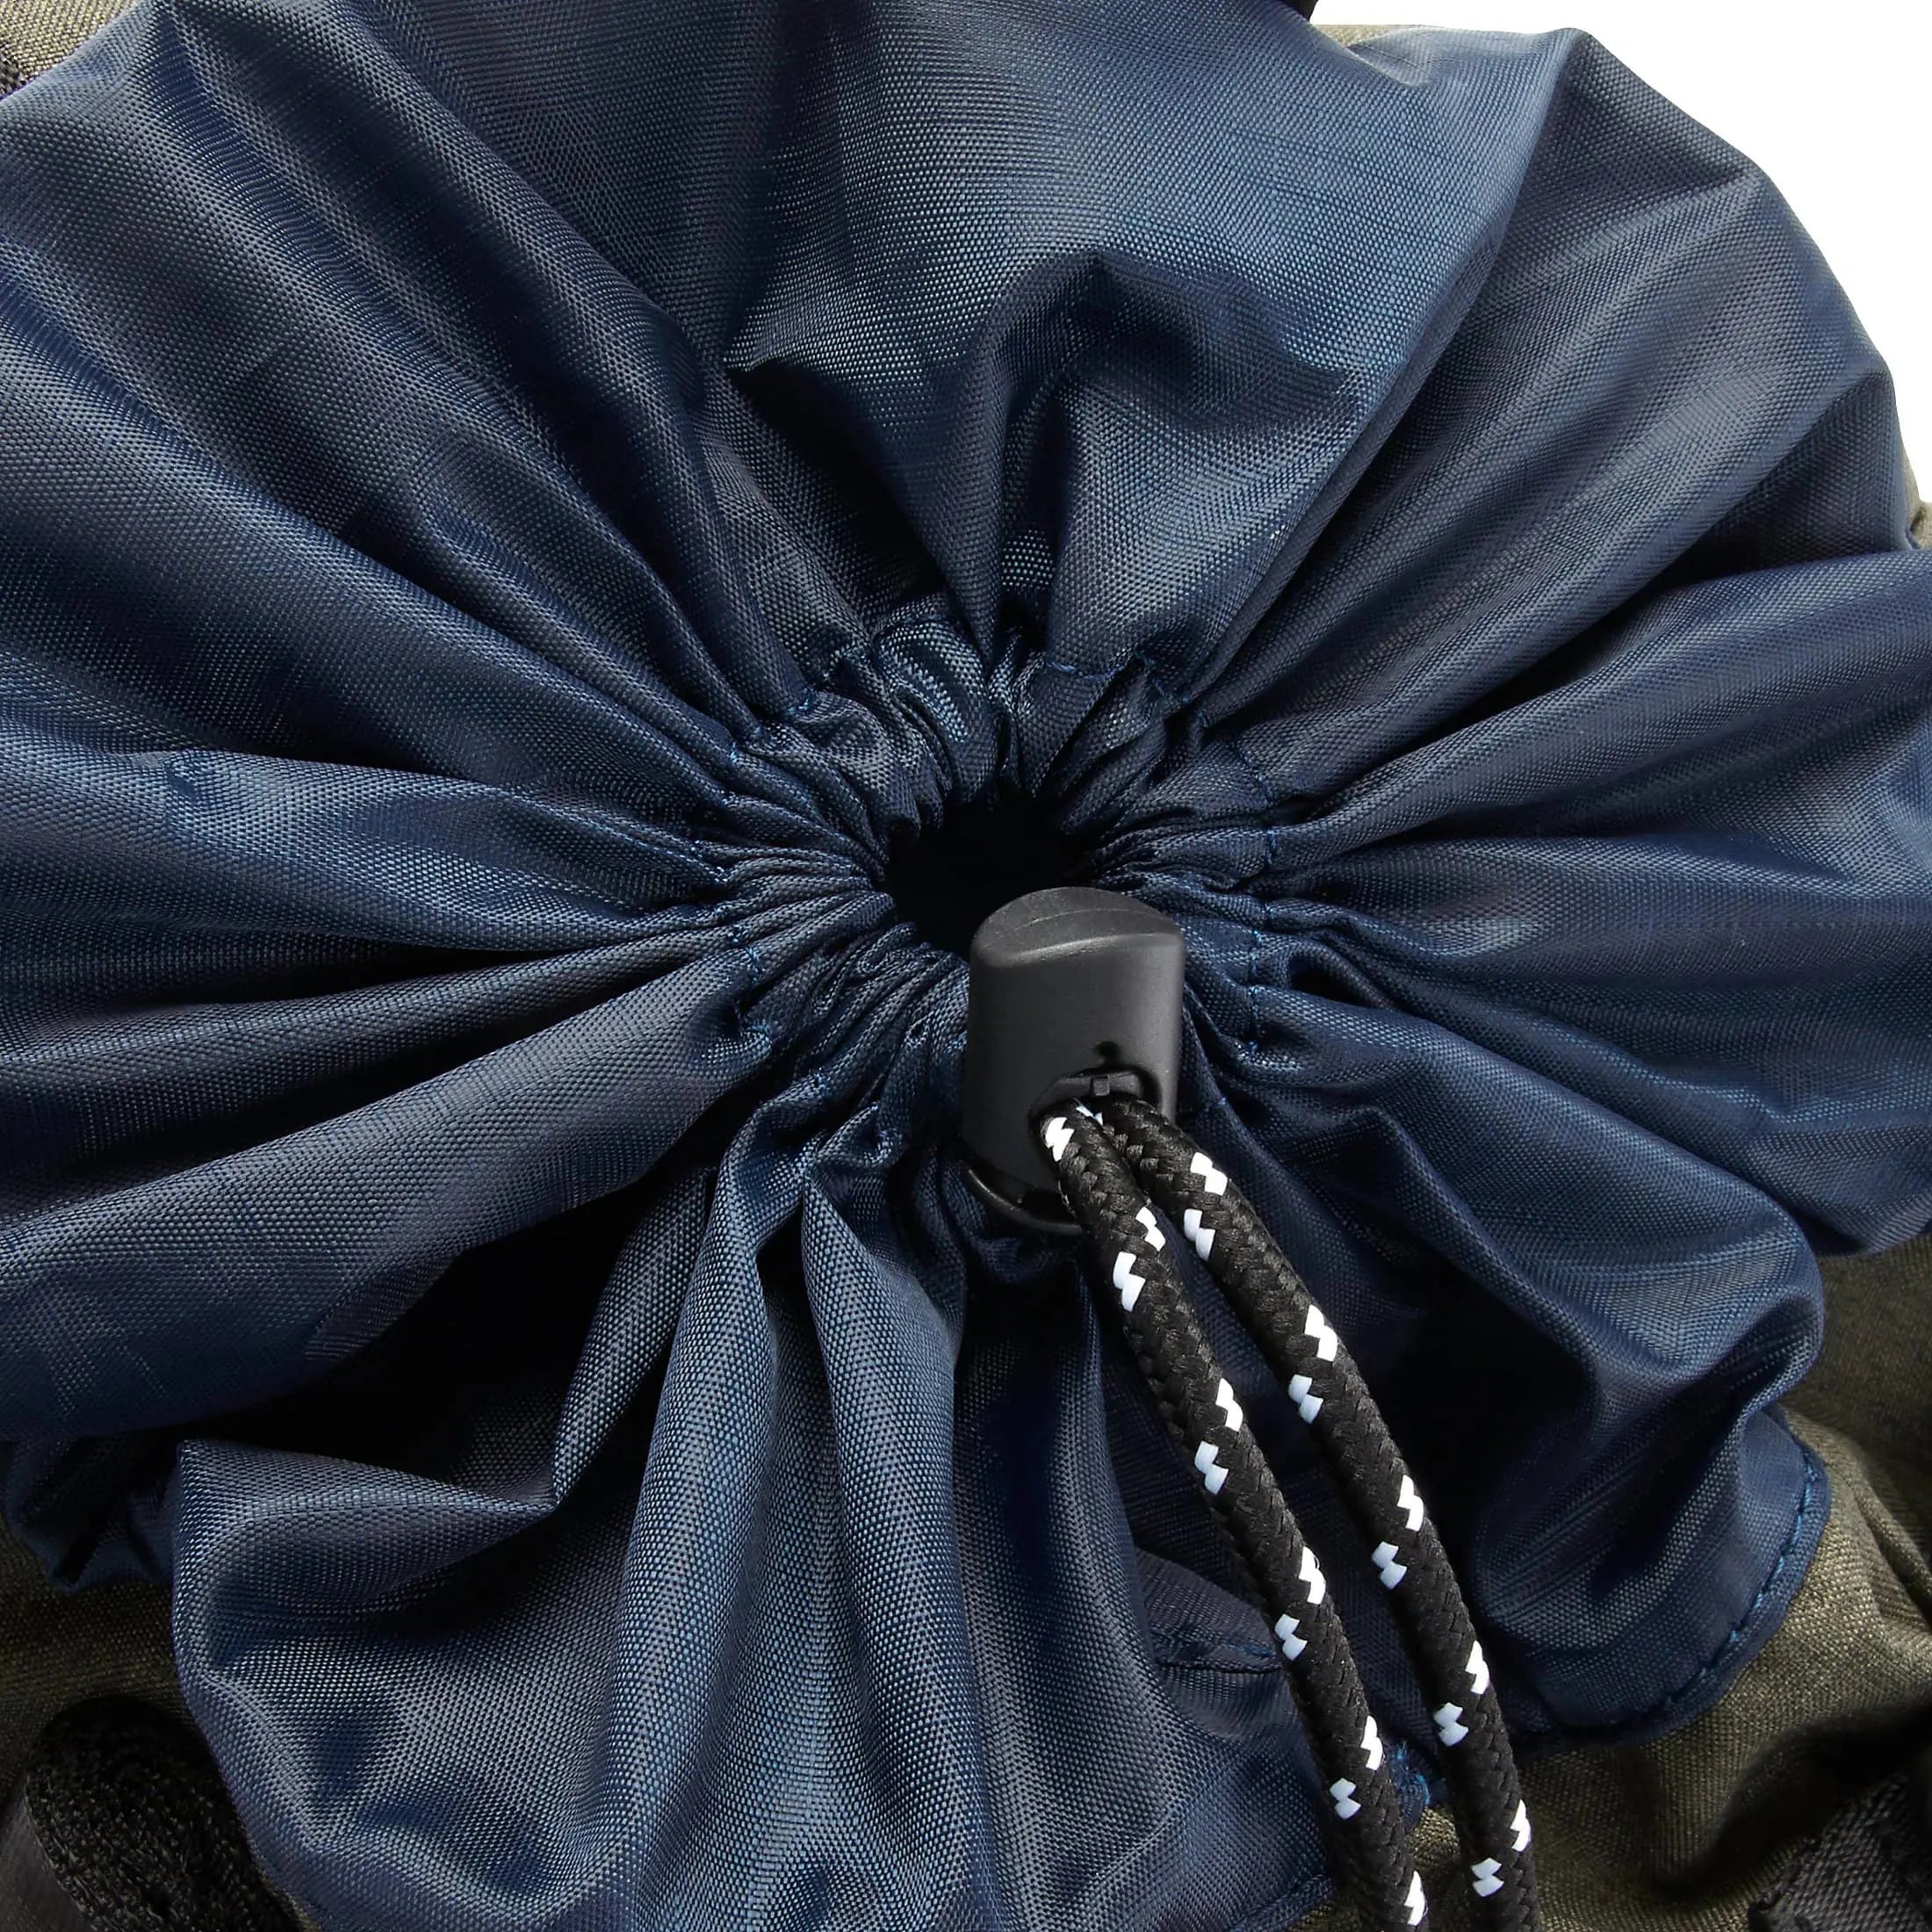 Chiemsee Sacs de sport et de voyage Sac à dos décontracté 44 cm - bleu couronne